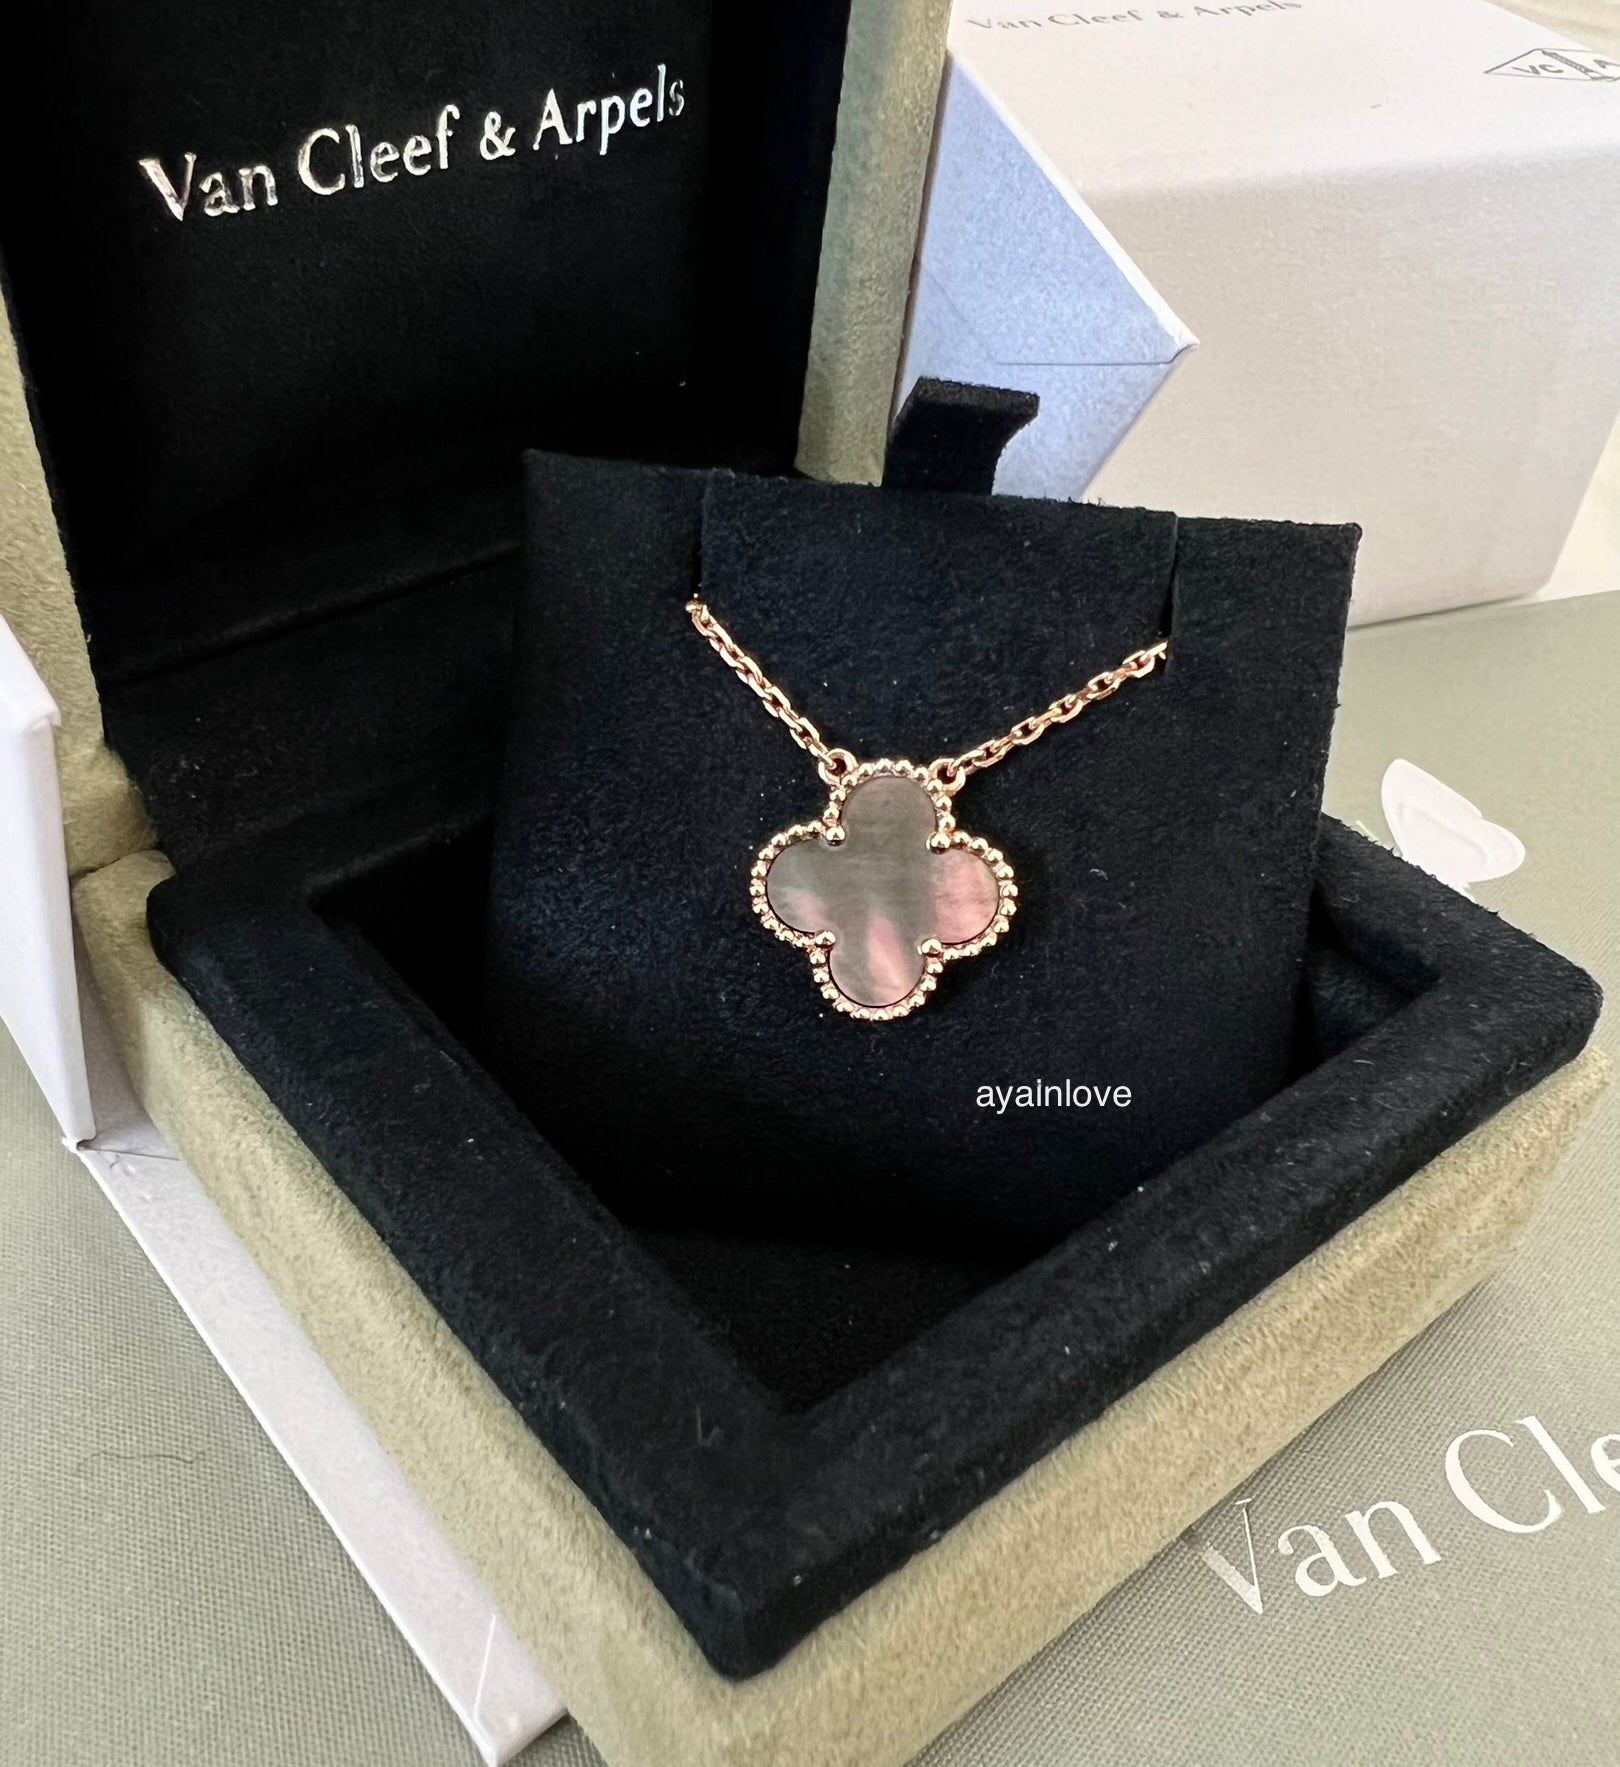 The 5 Top Van Cleef & Arpels Necklaces